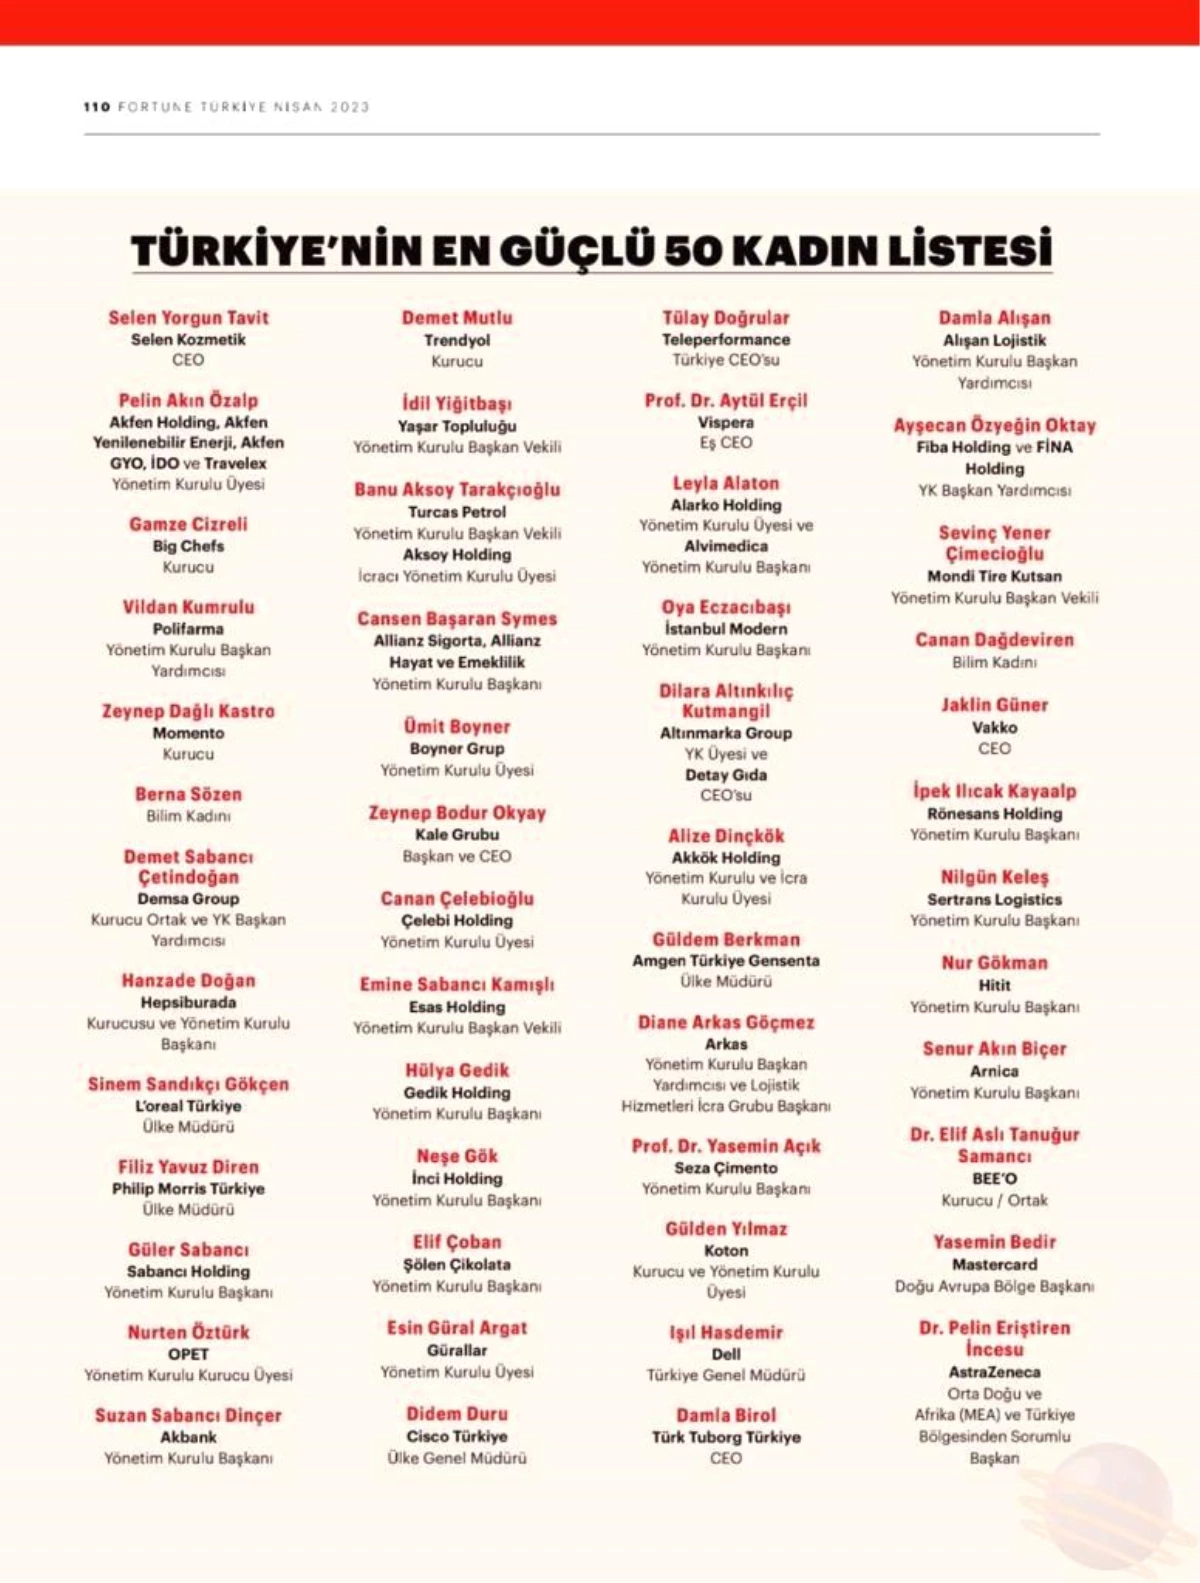 Prof. Dr. Yasemin Açık, Türkiye'nin en güçlü 50 iş bayanı listesinde yer aldı